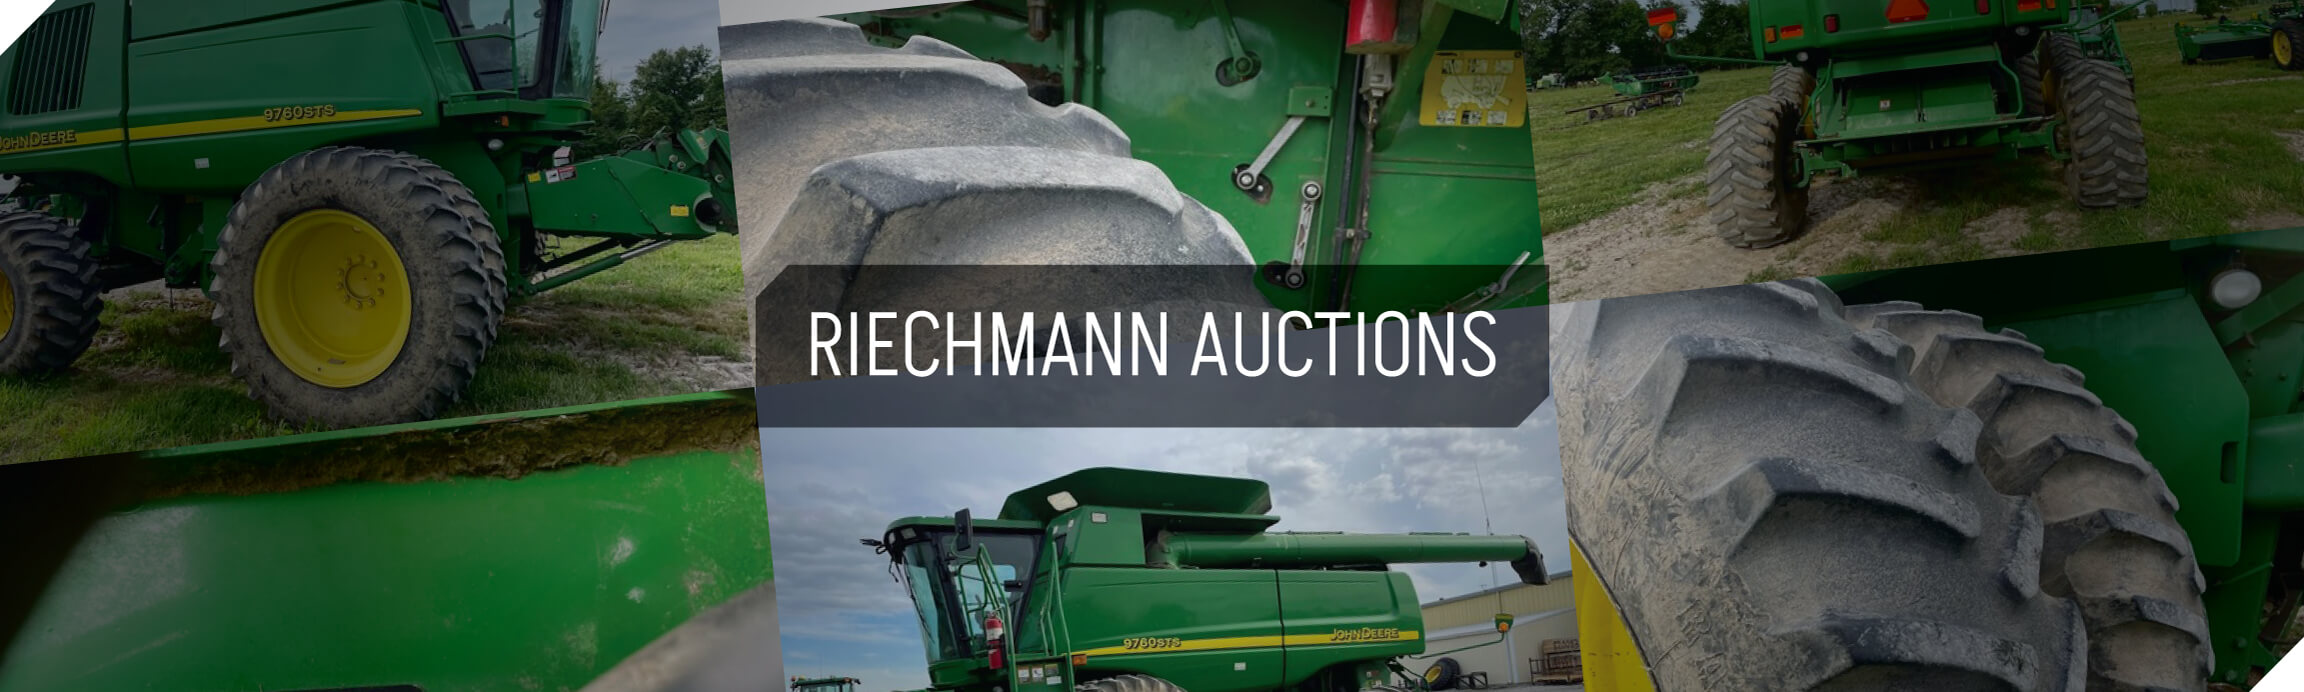 Riechmann Auction Equipment